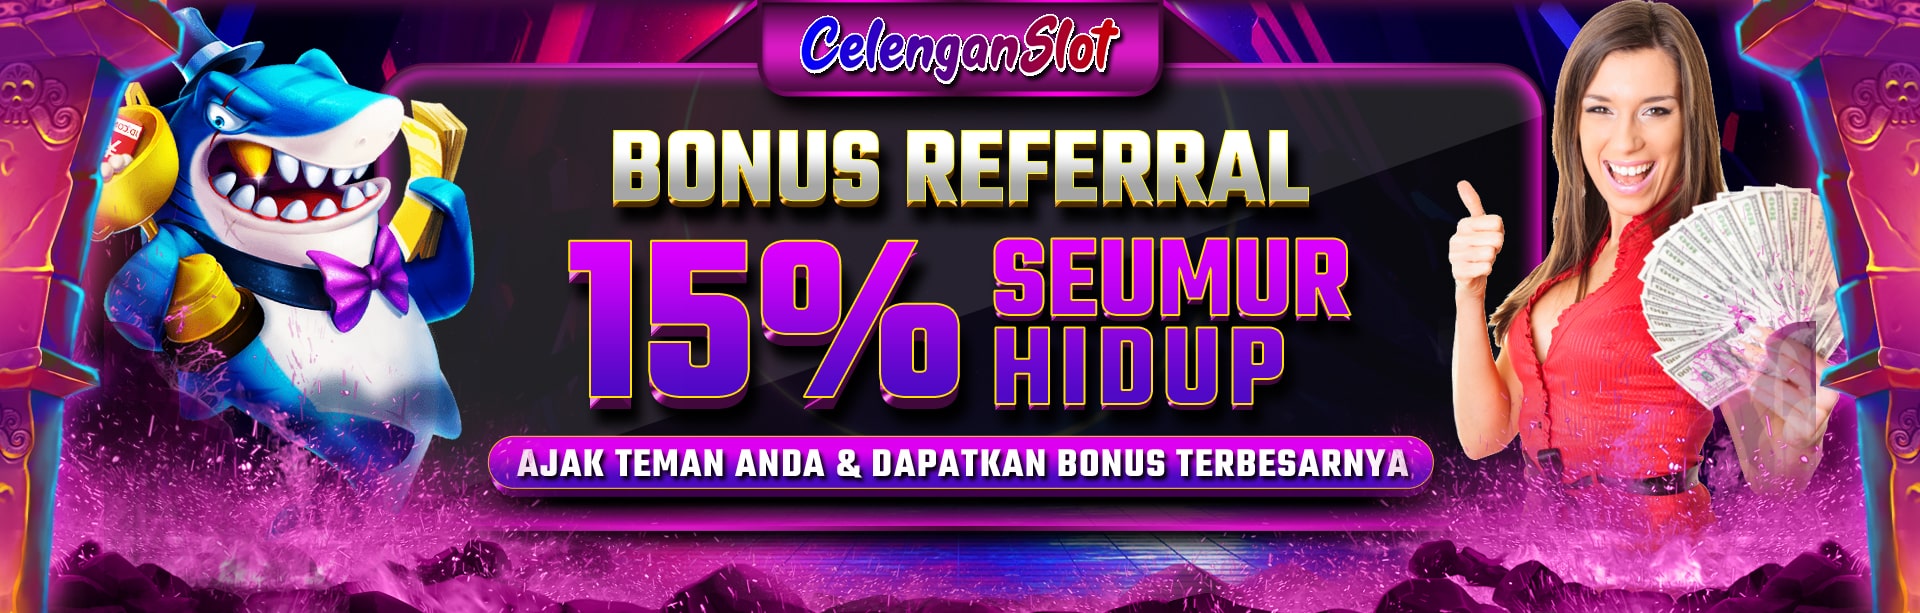 Bonus Referral CelenganSlot 15%